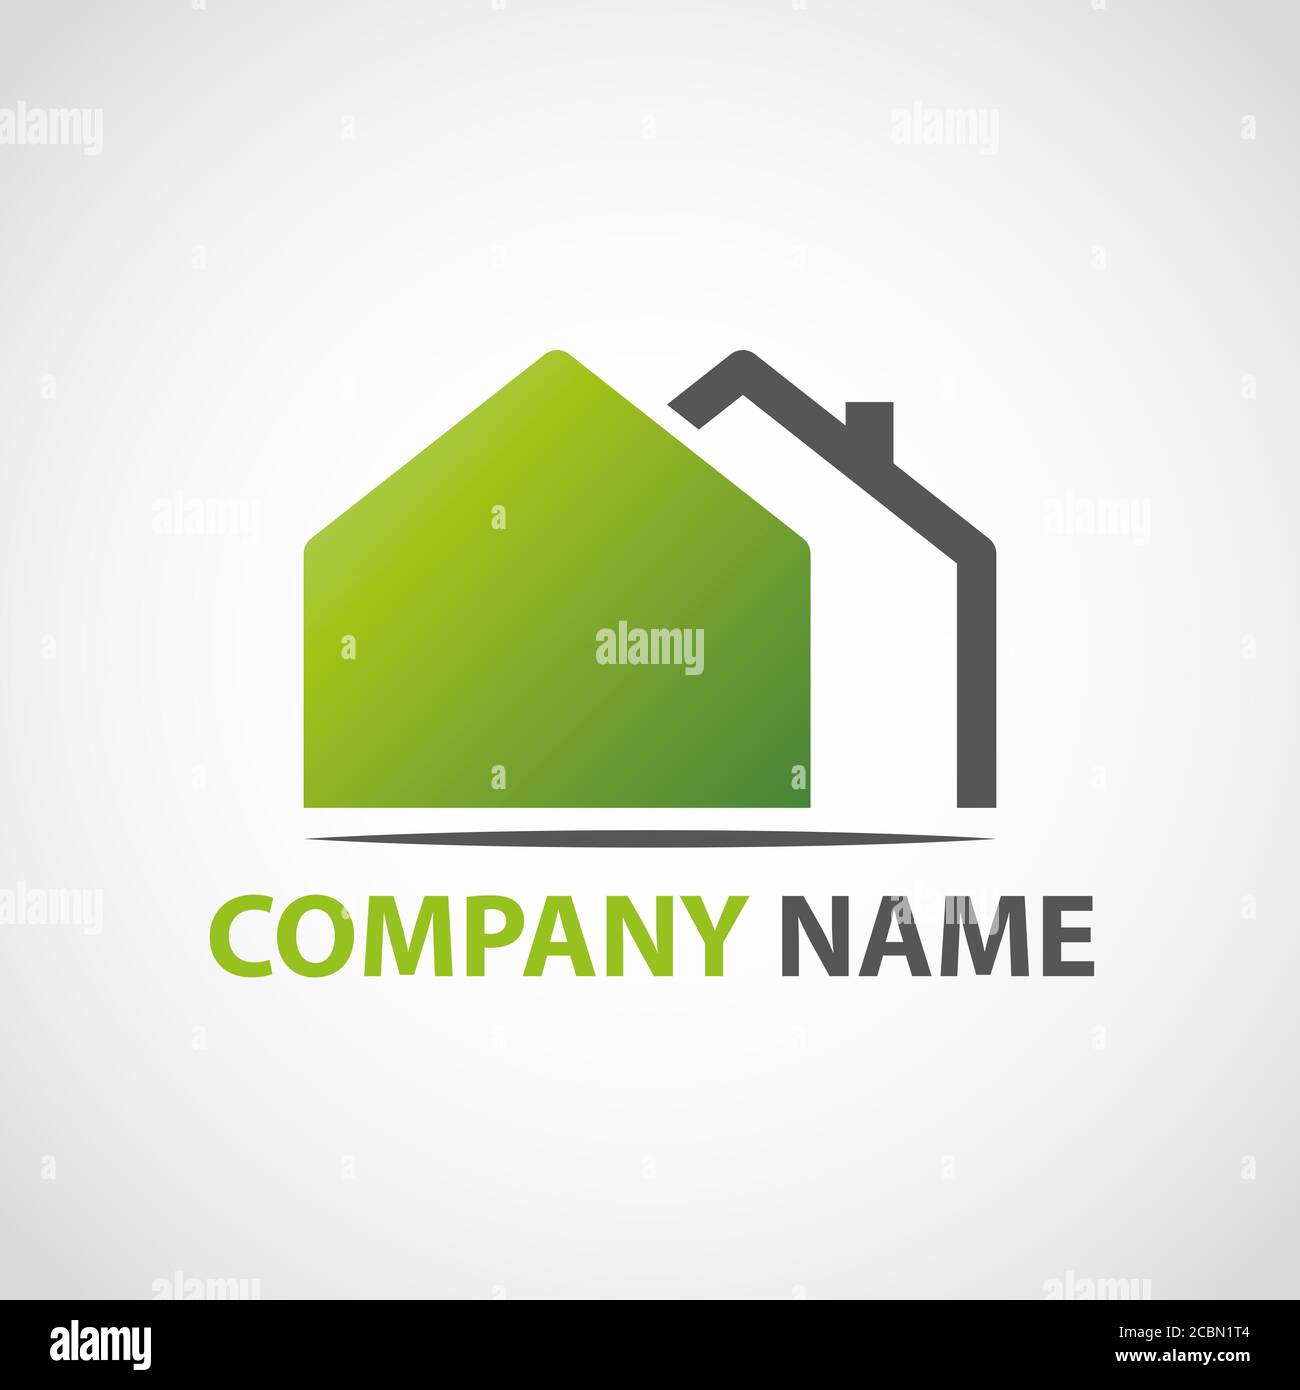 Illustration eines Logos für Werbung - Geschäftskonzept Stockfoto